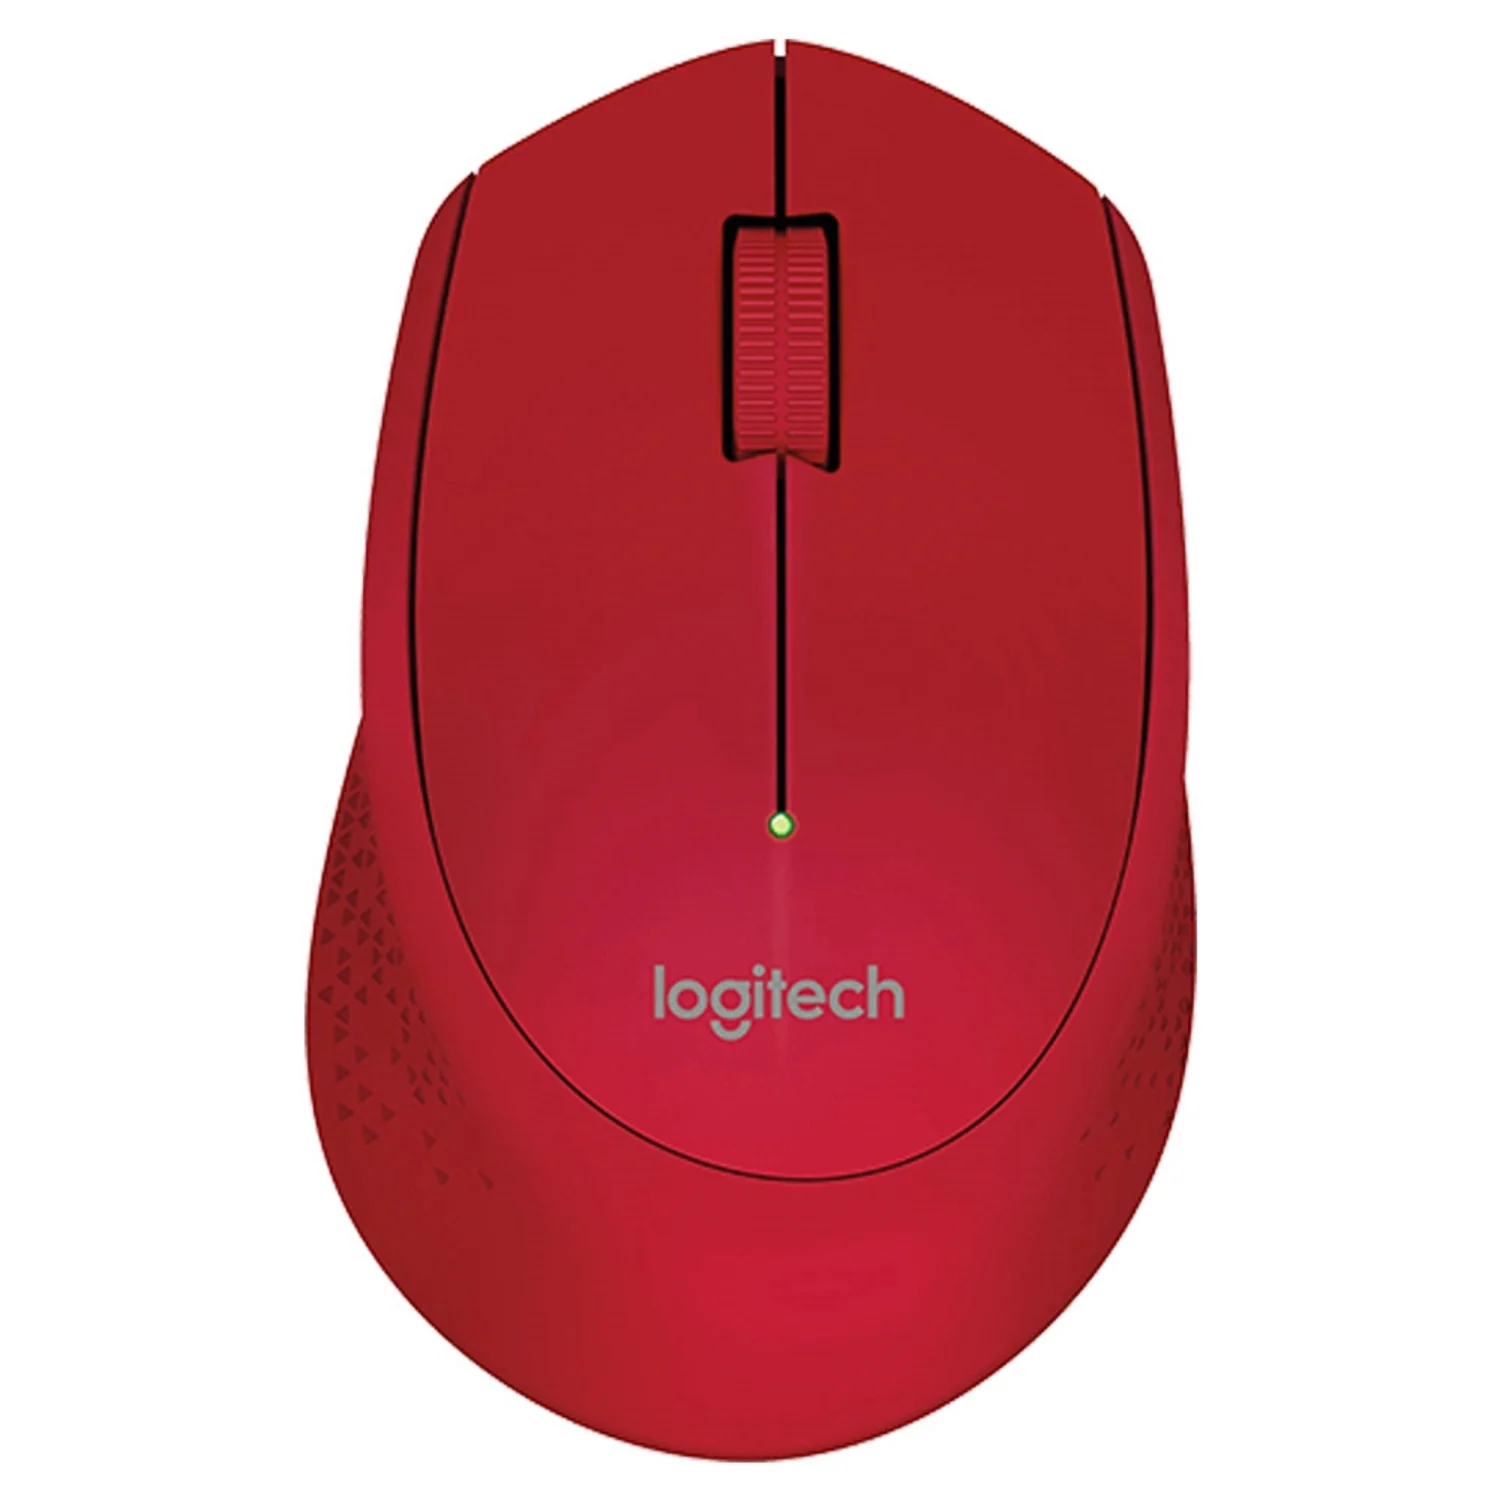 Mouse Logitech M280 - Vermelho (910-004286)